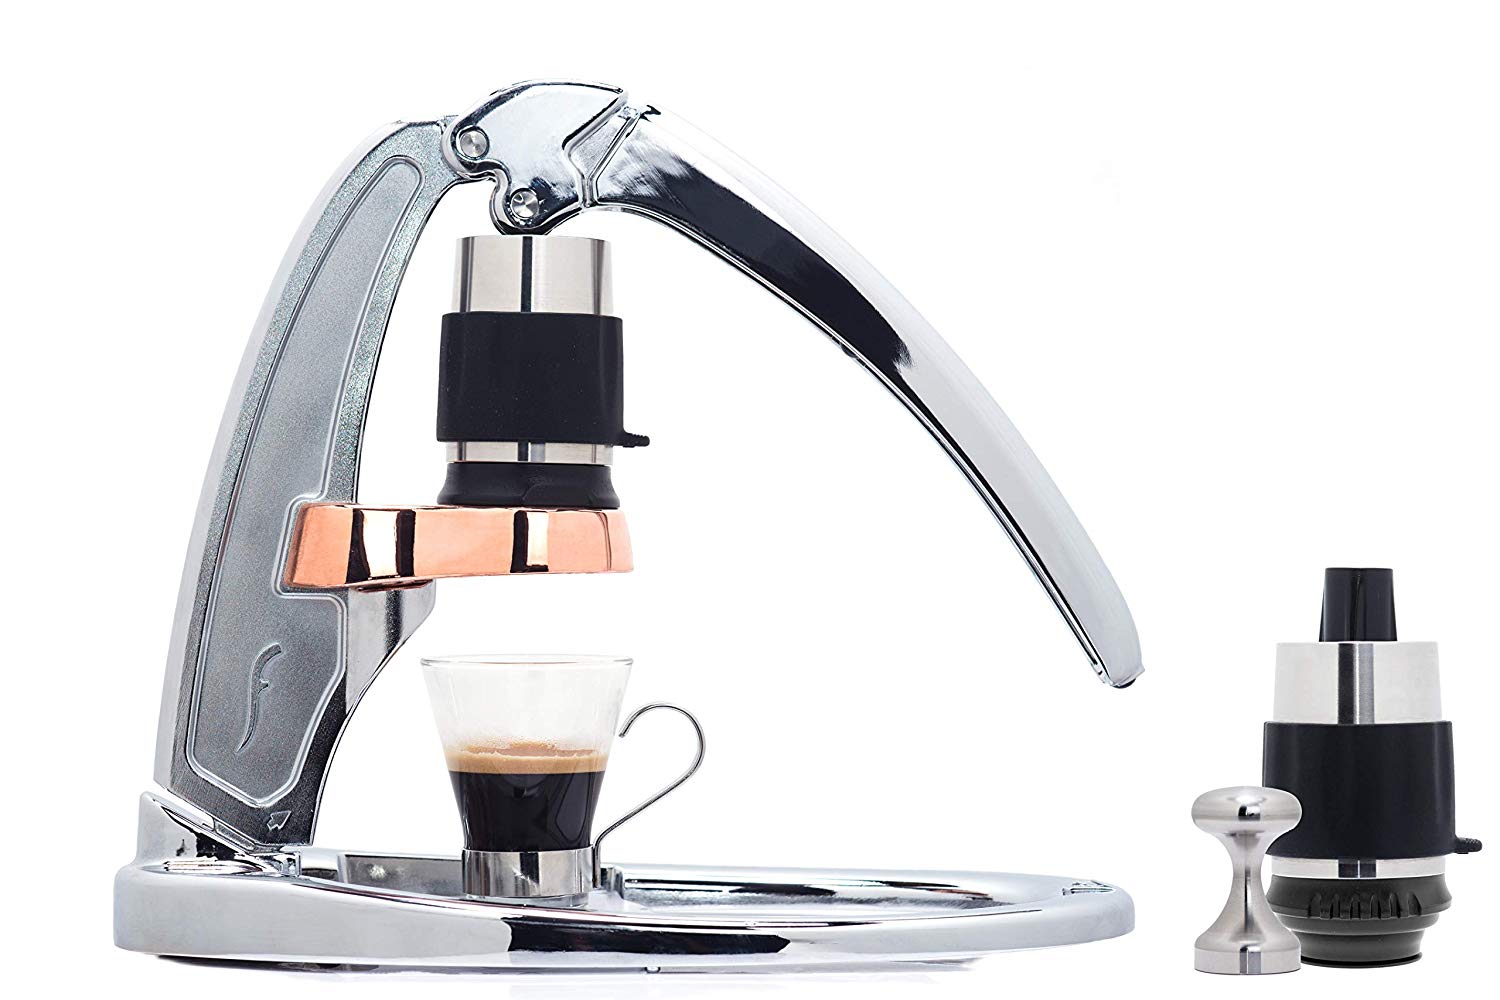 flair-manual-espresso-press-chrome-bundle